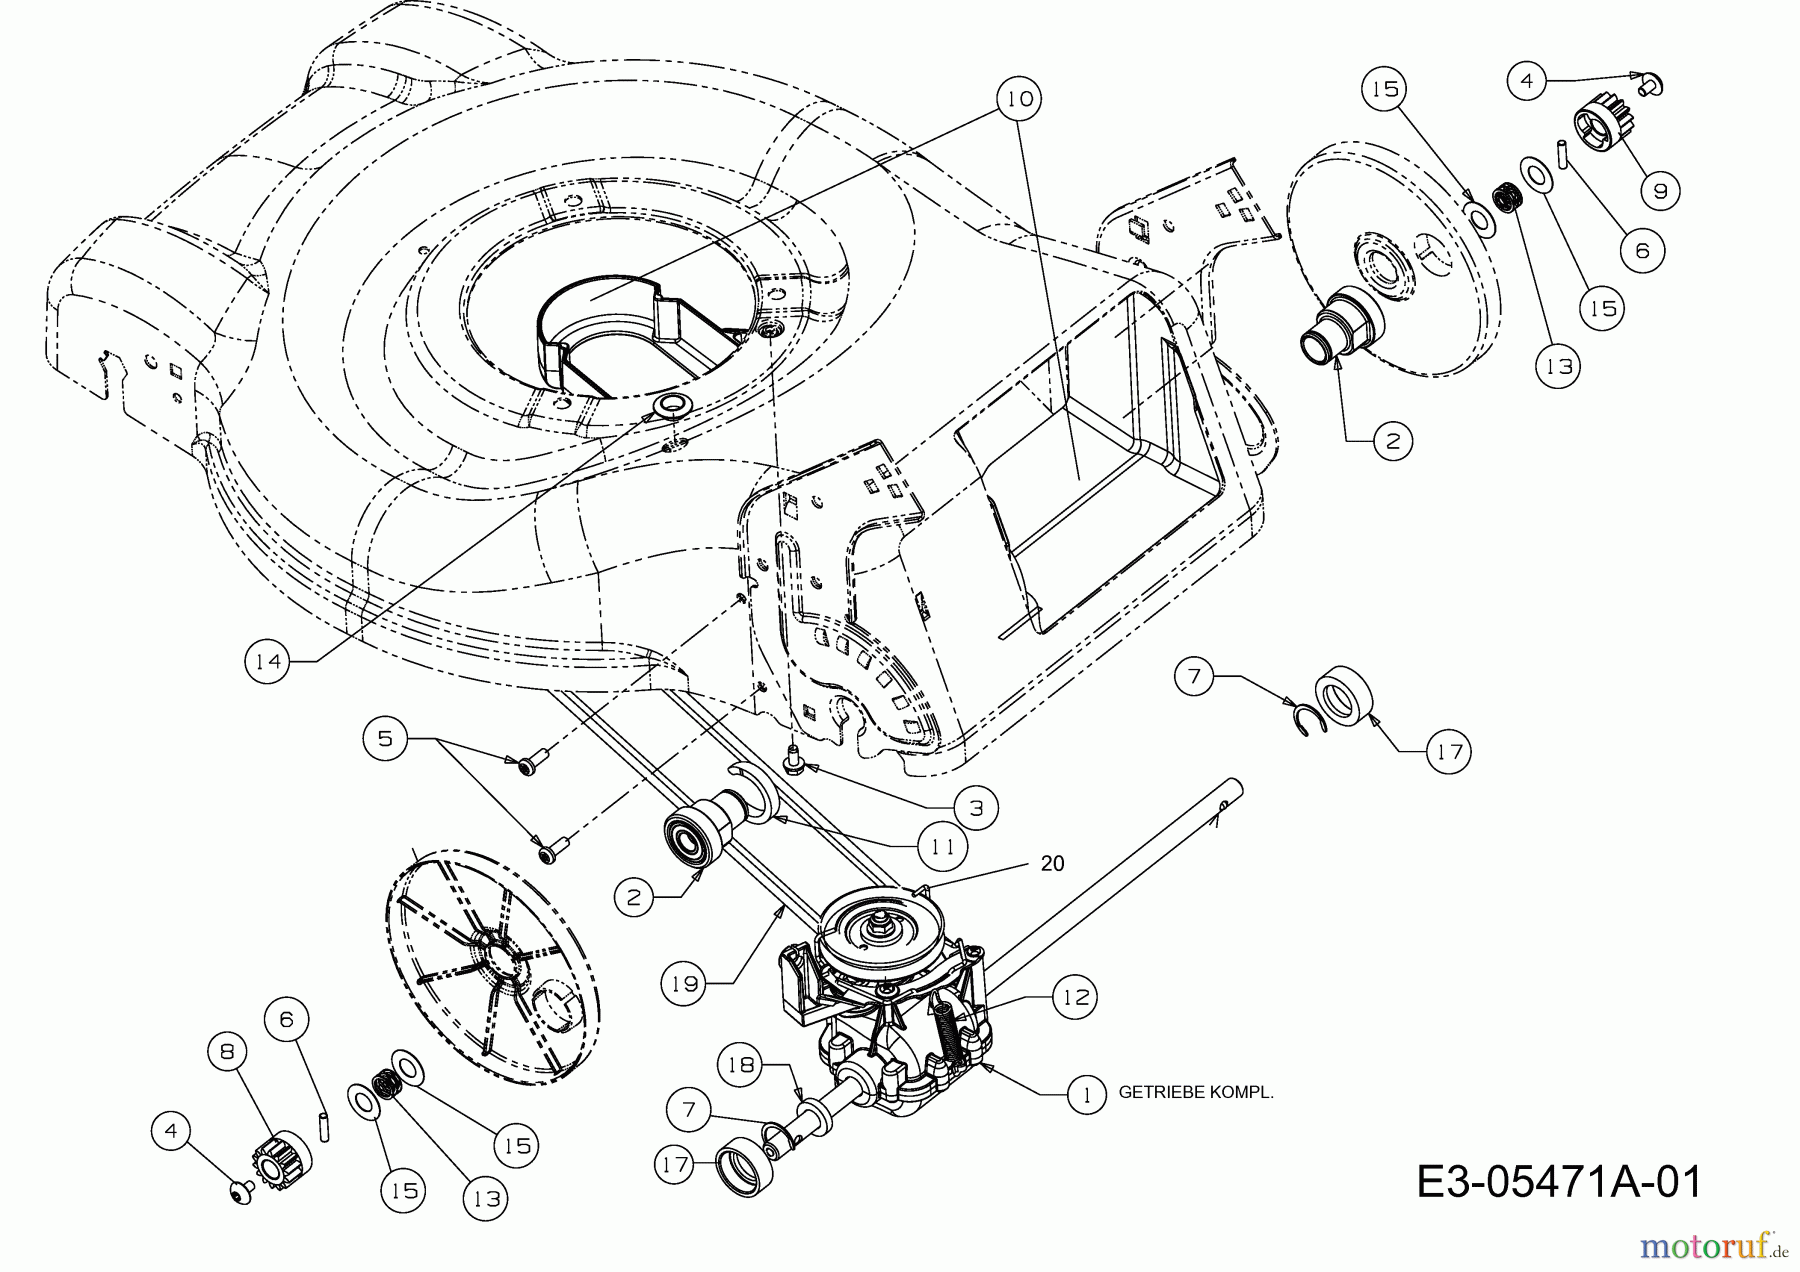  MTD Motormäher mit Antrieb GL 46 SPO 12D-J5JS676  (2011) Getriebe